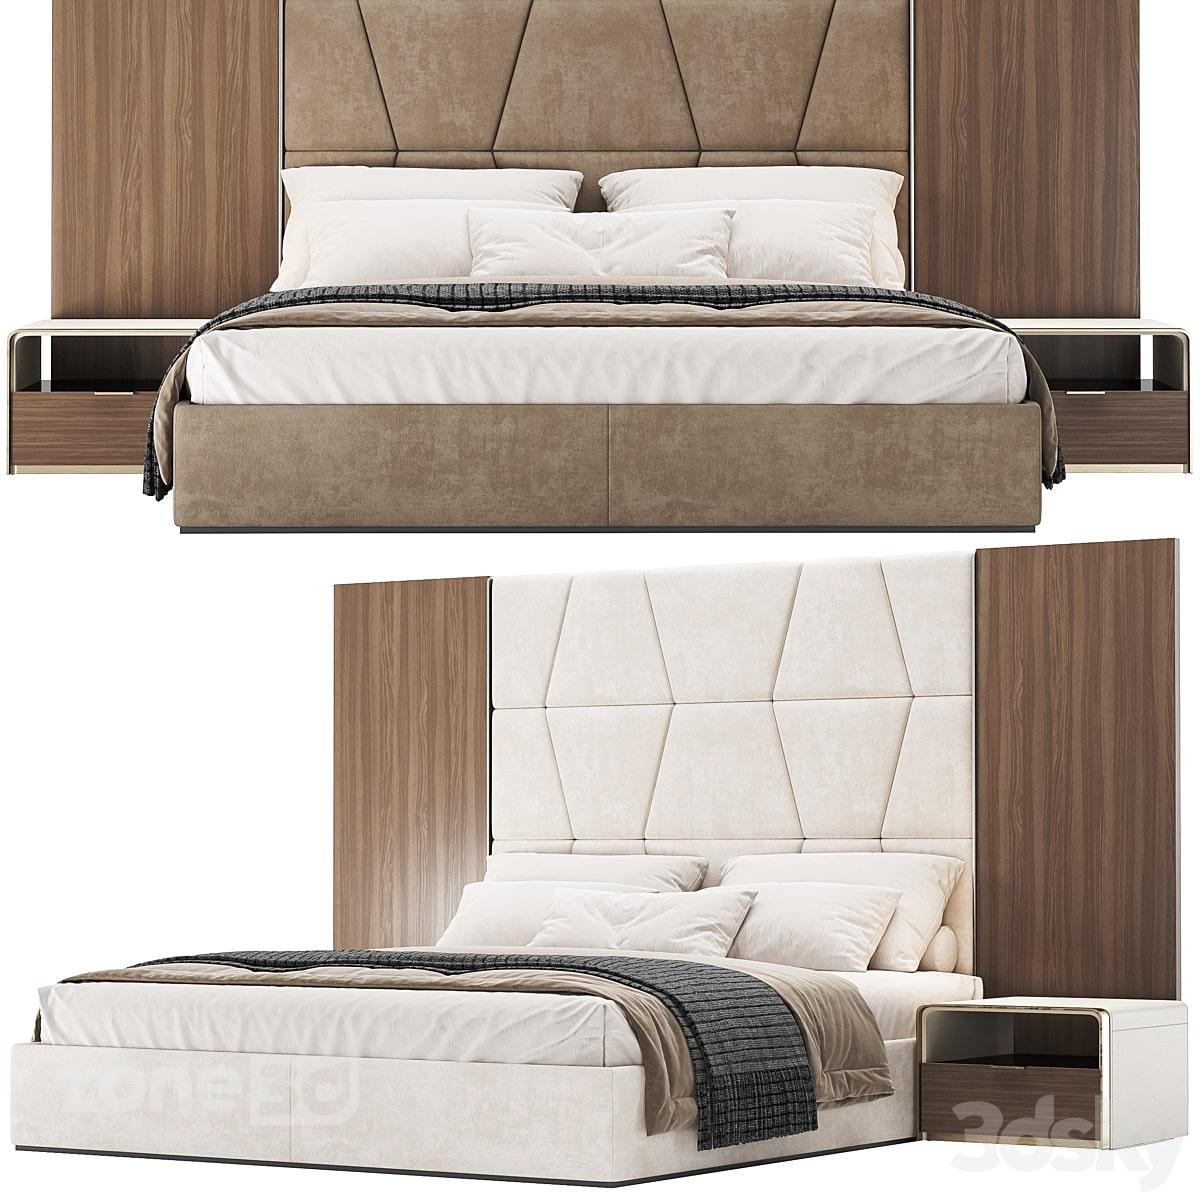 آبجکت ست تخت خواب دو نفره راحتی مدرن پارچه ای با تاج تخت چوبی و پارچه ای با میز پاتختی BALI